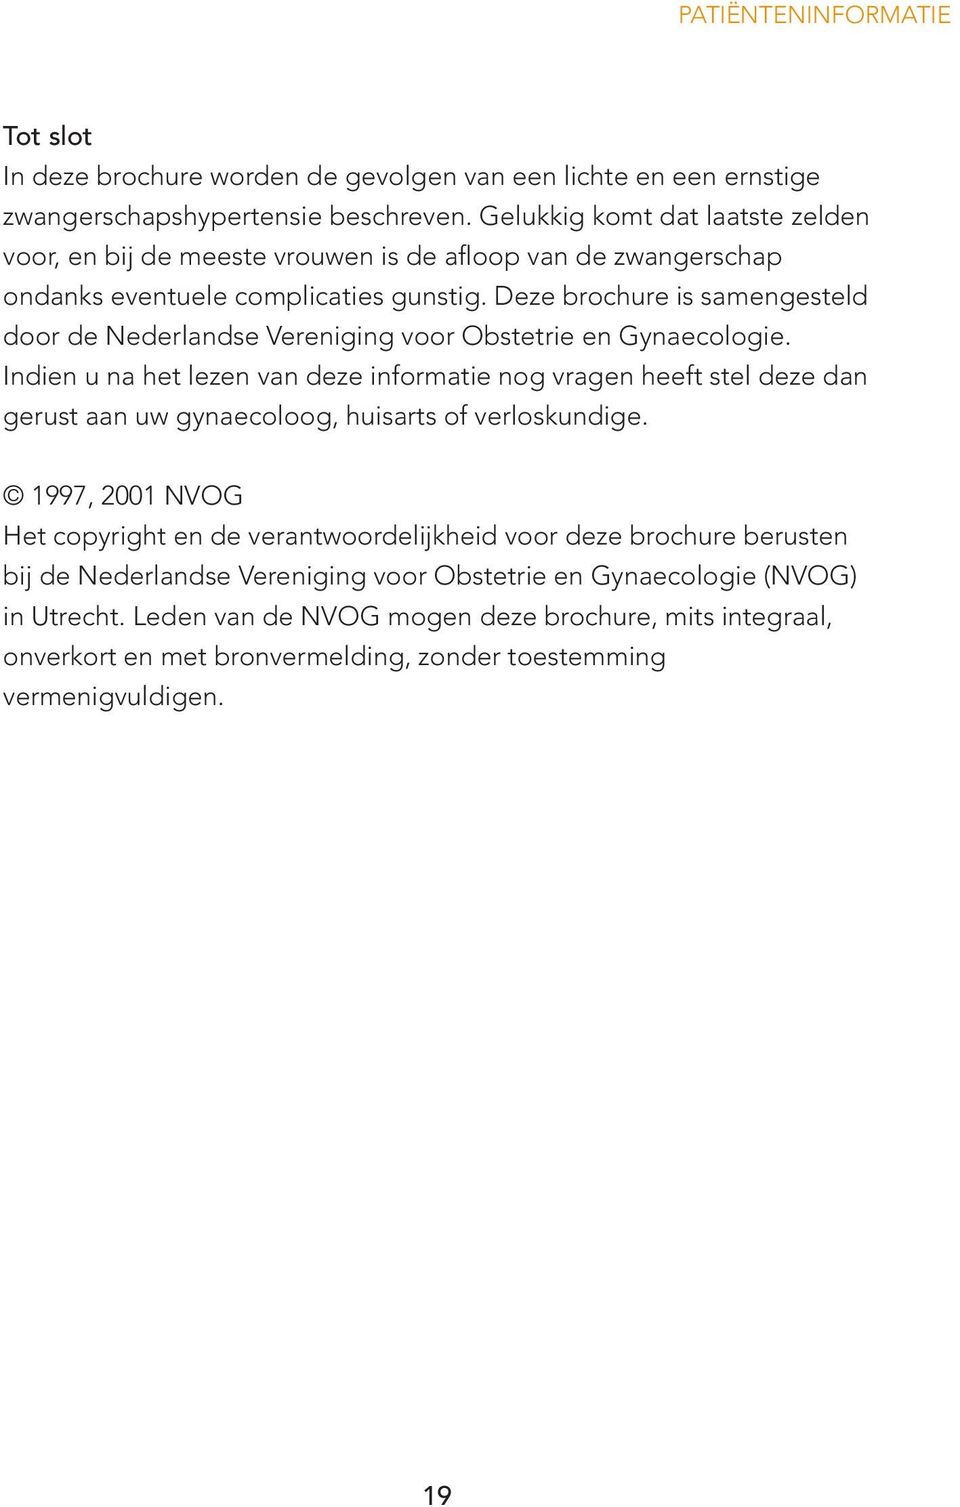 Deze brochure is samengesteld door de Nederlandse Vereniging voor Obstetrie en Gynaecologie.